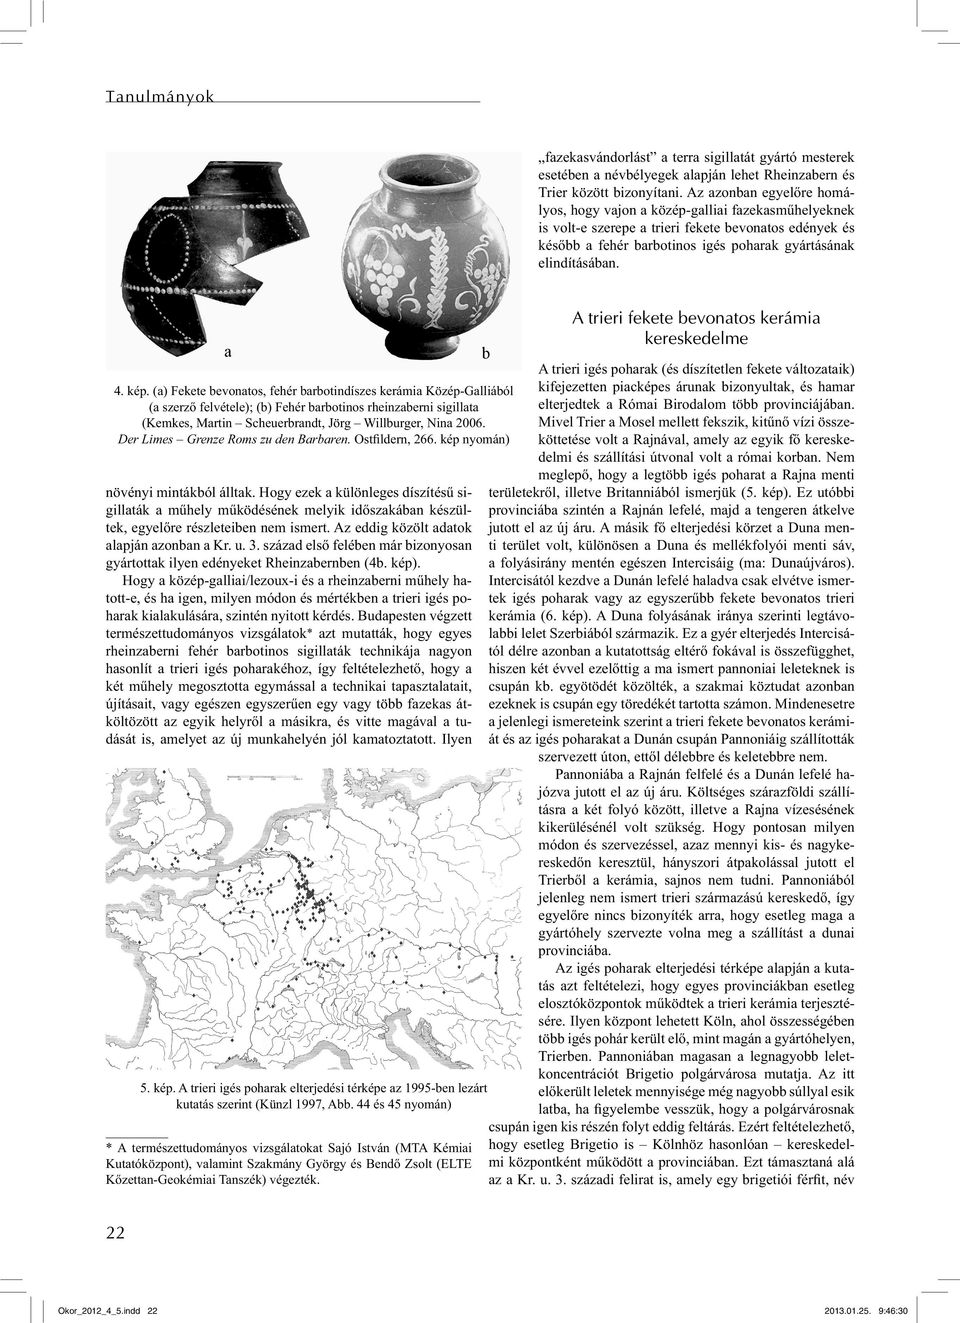 kép. (a) Fekete bevonatos, fehér barbotindíszes kerámia Közép-Galliából (a szerző felvétele); (b) Fehér barbotinos rheinzaberni sigillata (Kemkes, Martin Scheuerbrandt, Jörg Willburger, Nina 2006.